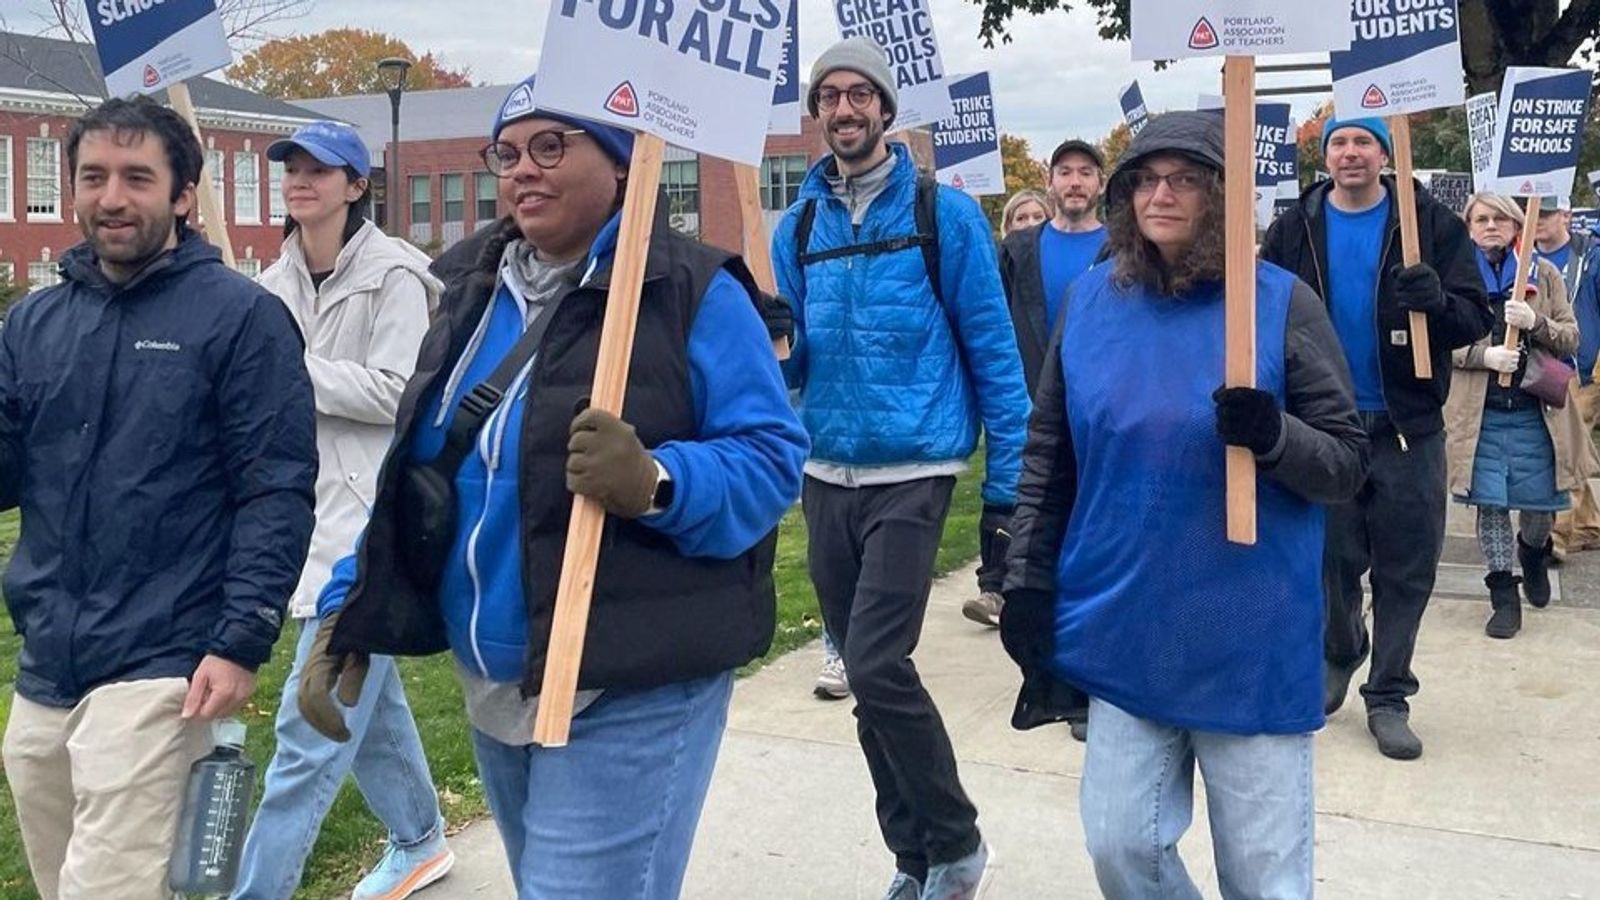 Die Lehrer in Portland treten in die zweite Woche des Streiks ein, da demokratische Politiker sich weigern, mehr Mittel für Schulen bereitzustellen